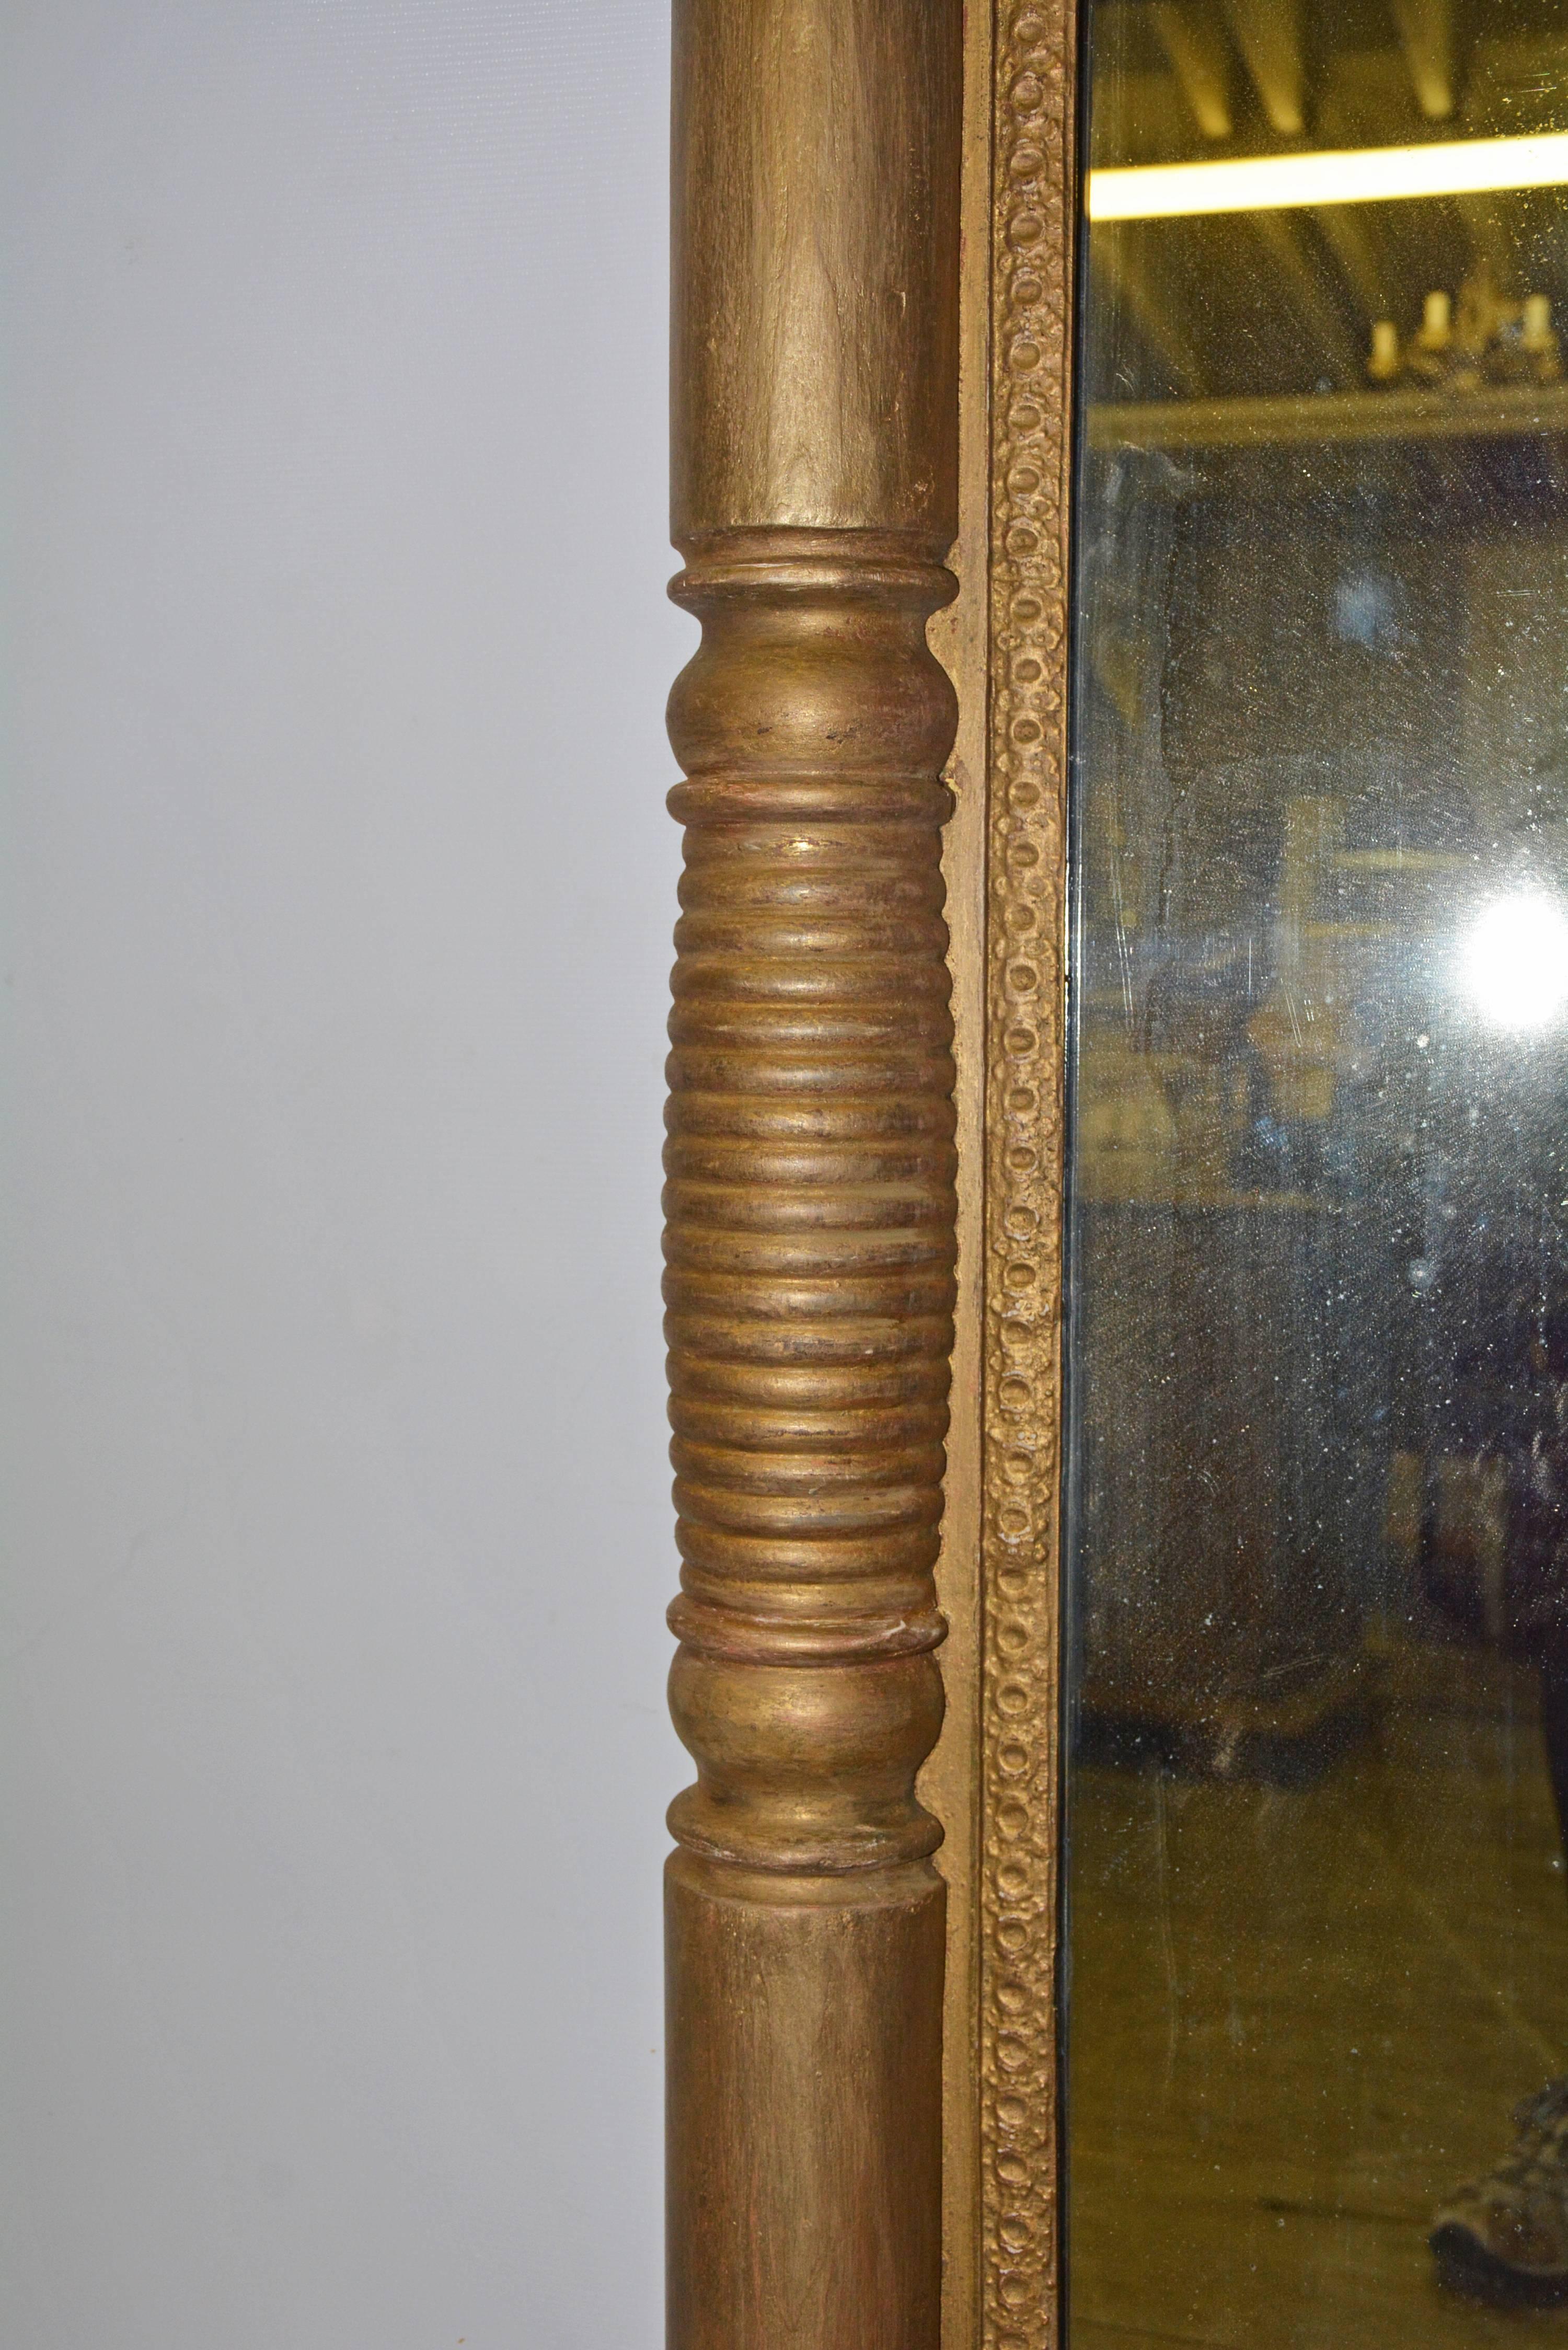 Der versilberte Spiegel im Federal Style des späten 19. Jahrhunderts besteht aus abwechselnd gerippten und glatten Pilastern, die an den Ecken mit quadratischen Blöcken abschließen. Die Rückwand besteht aus sechs horizontalen Brettern und ist zum